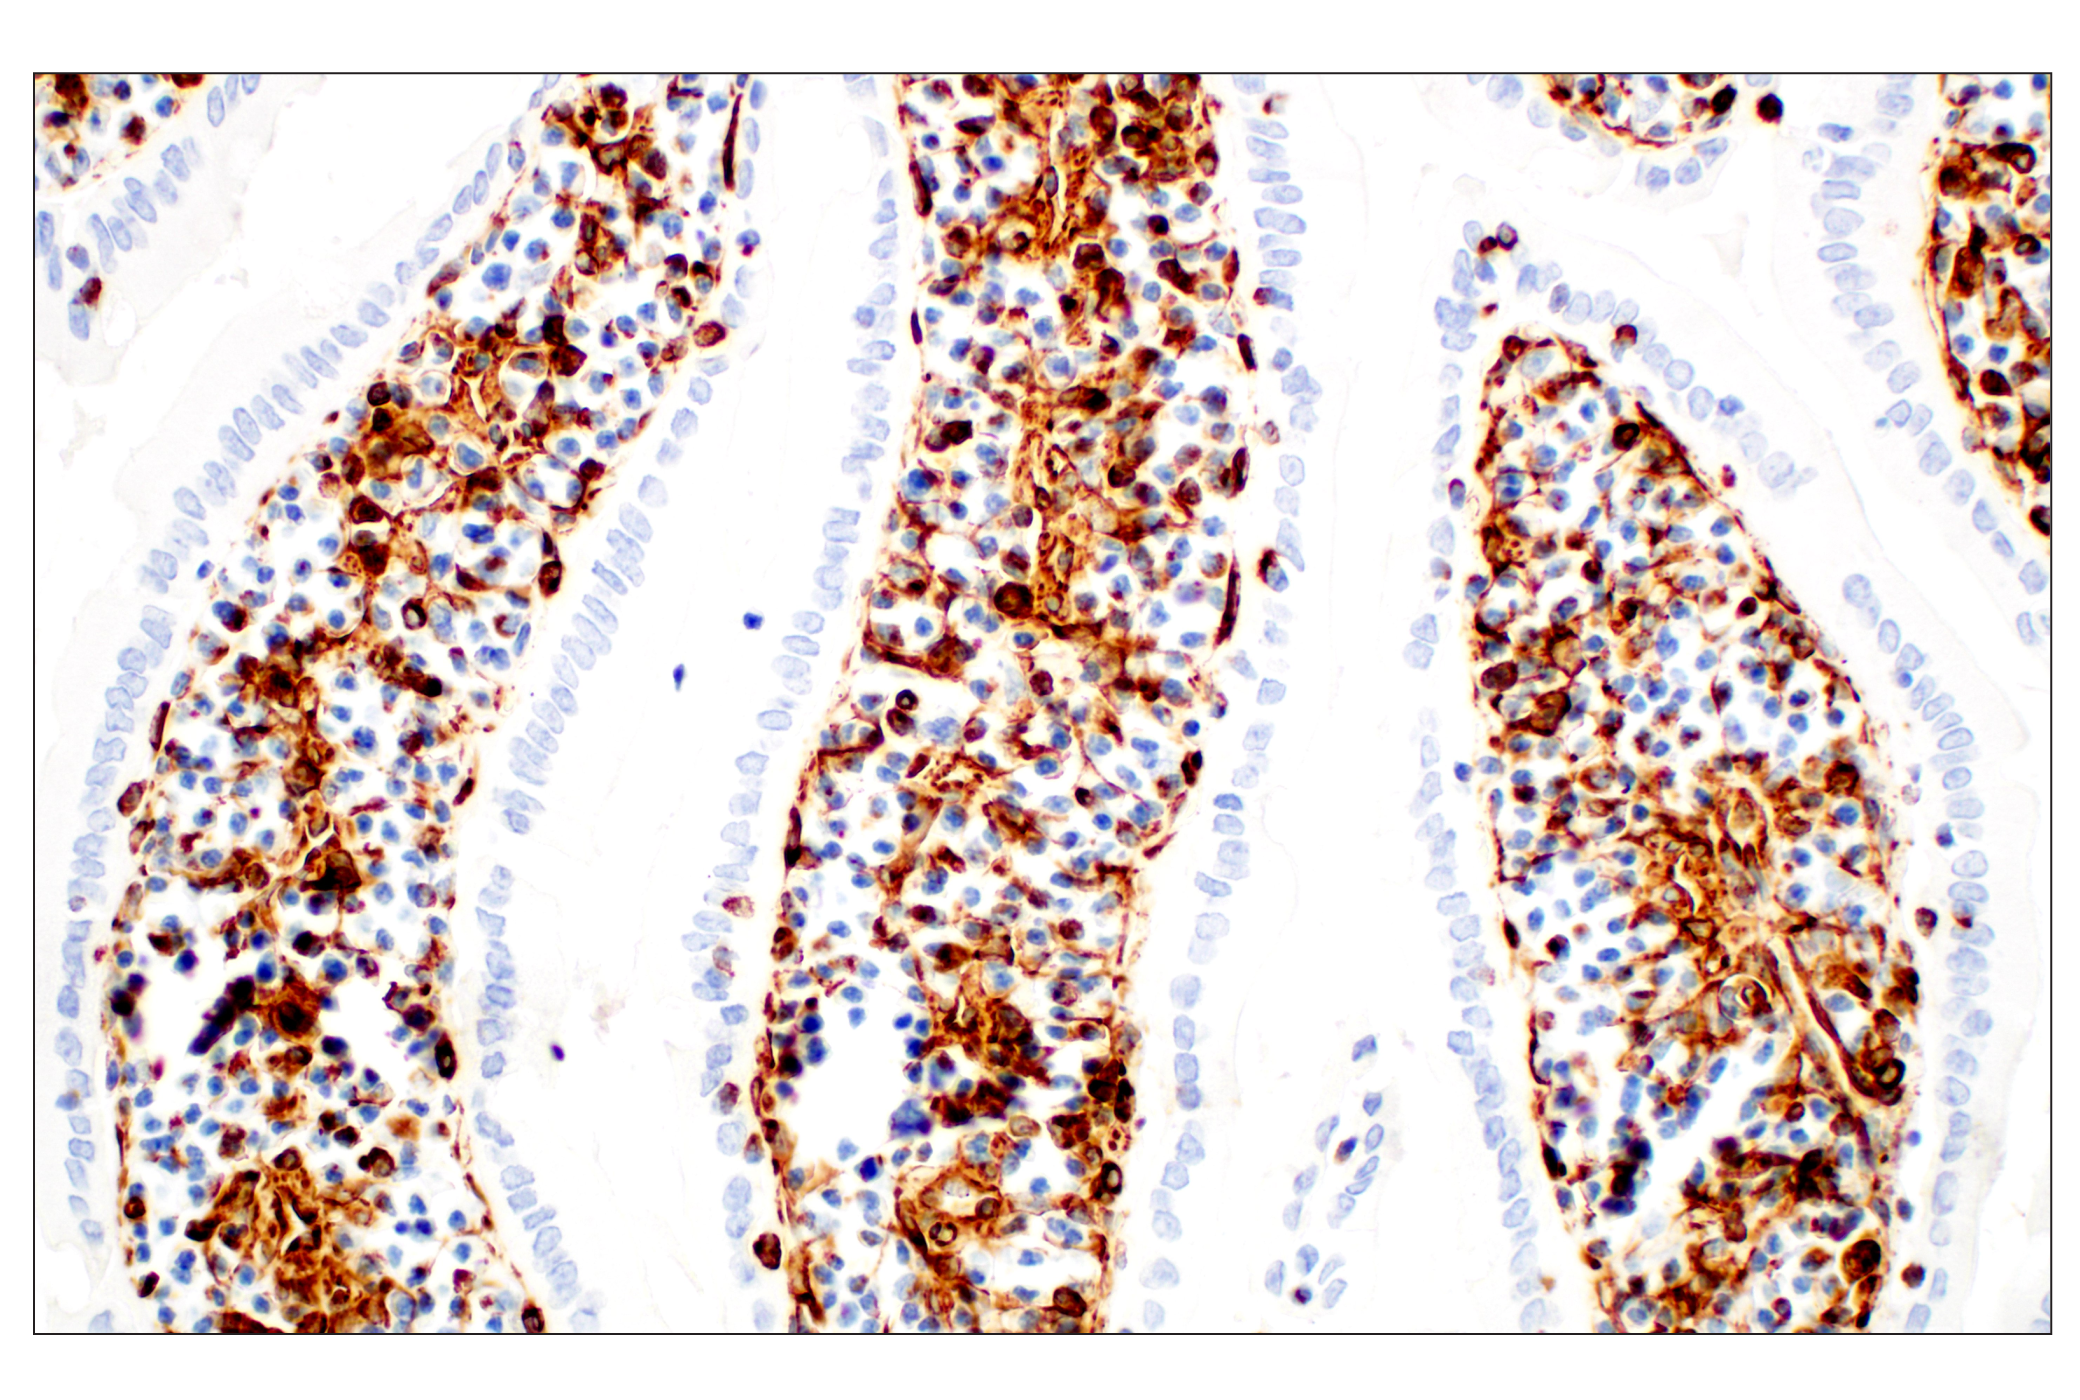  Image 45: Cell Fractionation Antibody Sampler Kit